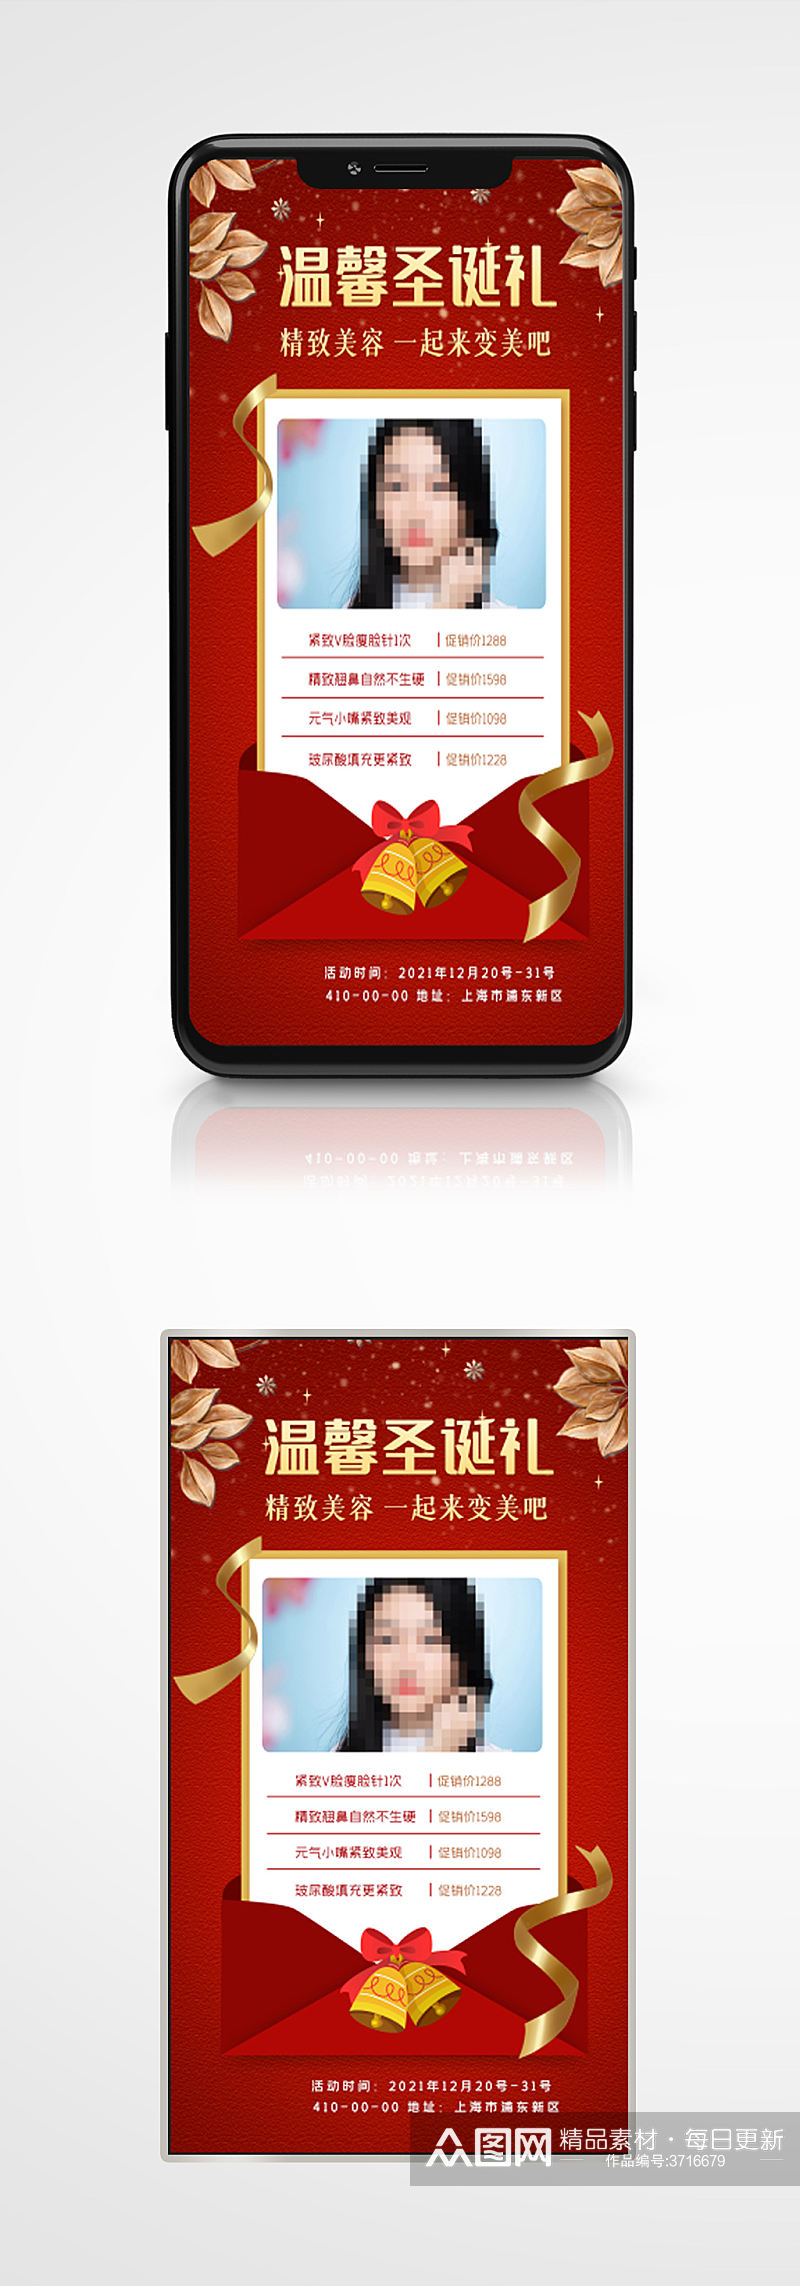 红色背景医美圣诞促销活动手机海报美容素材